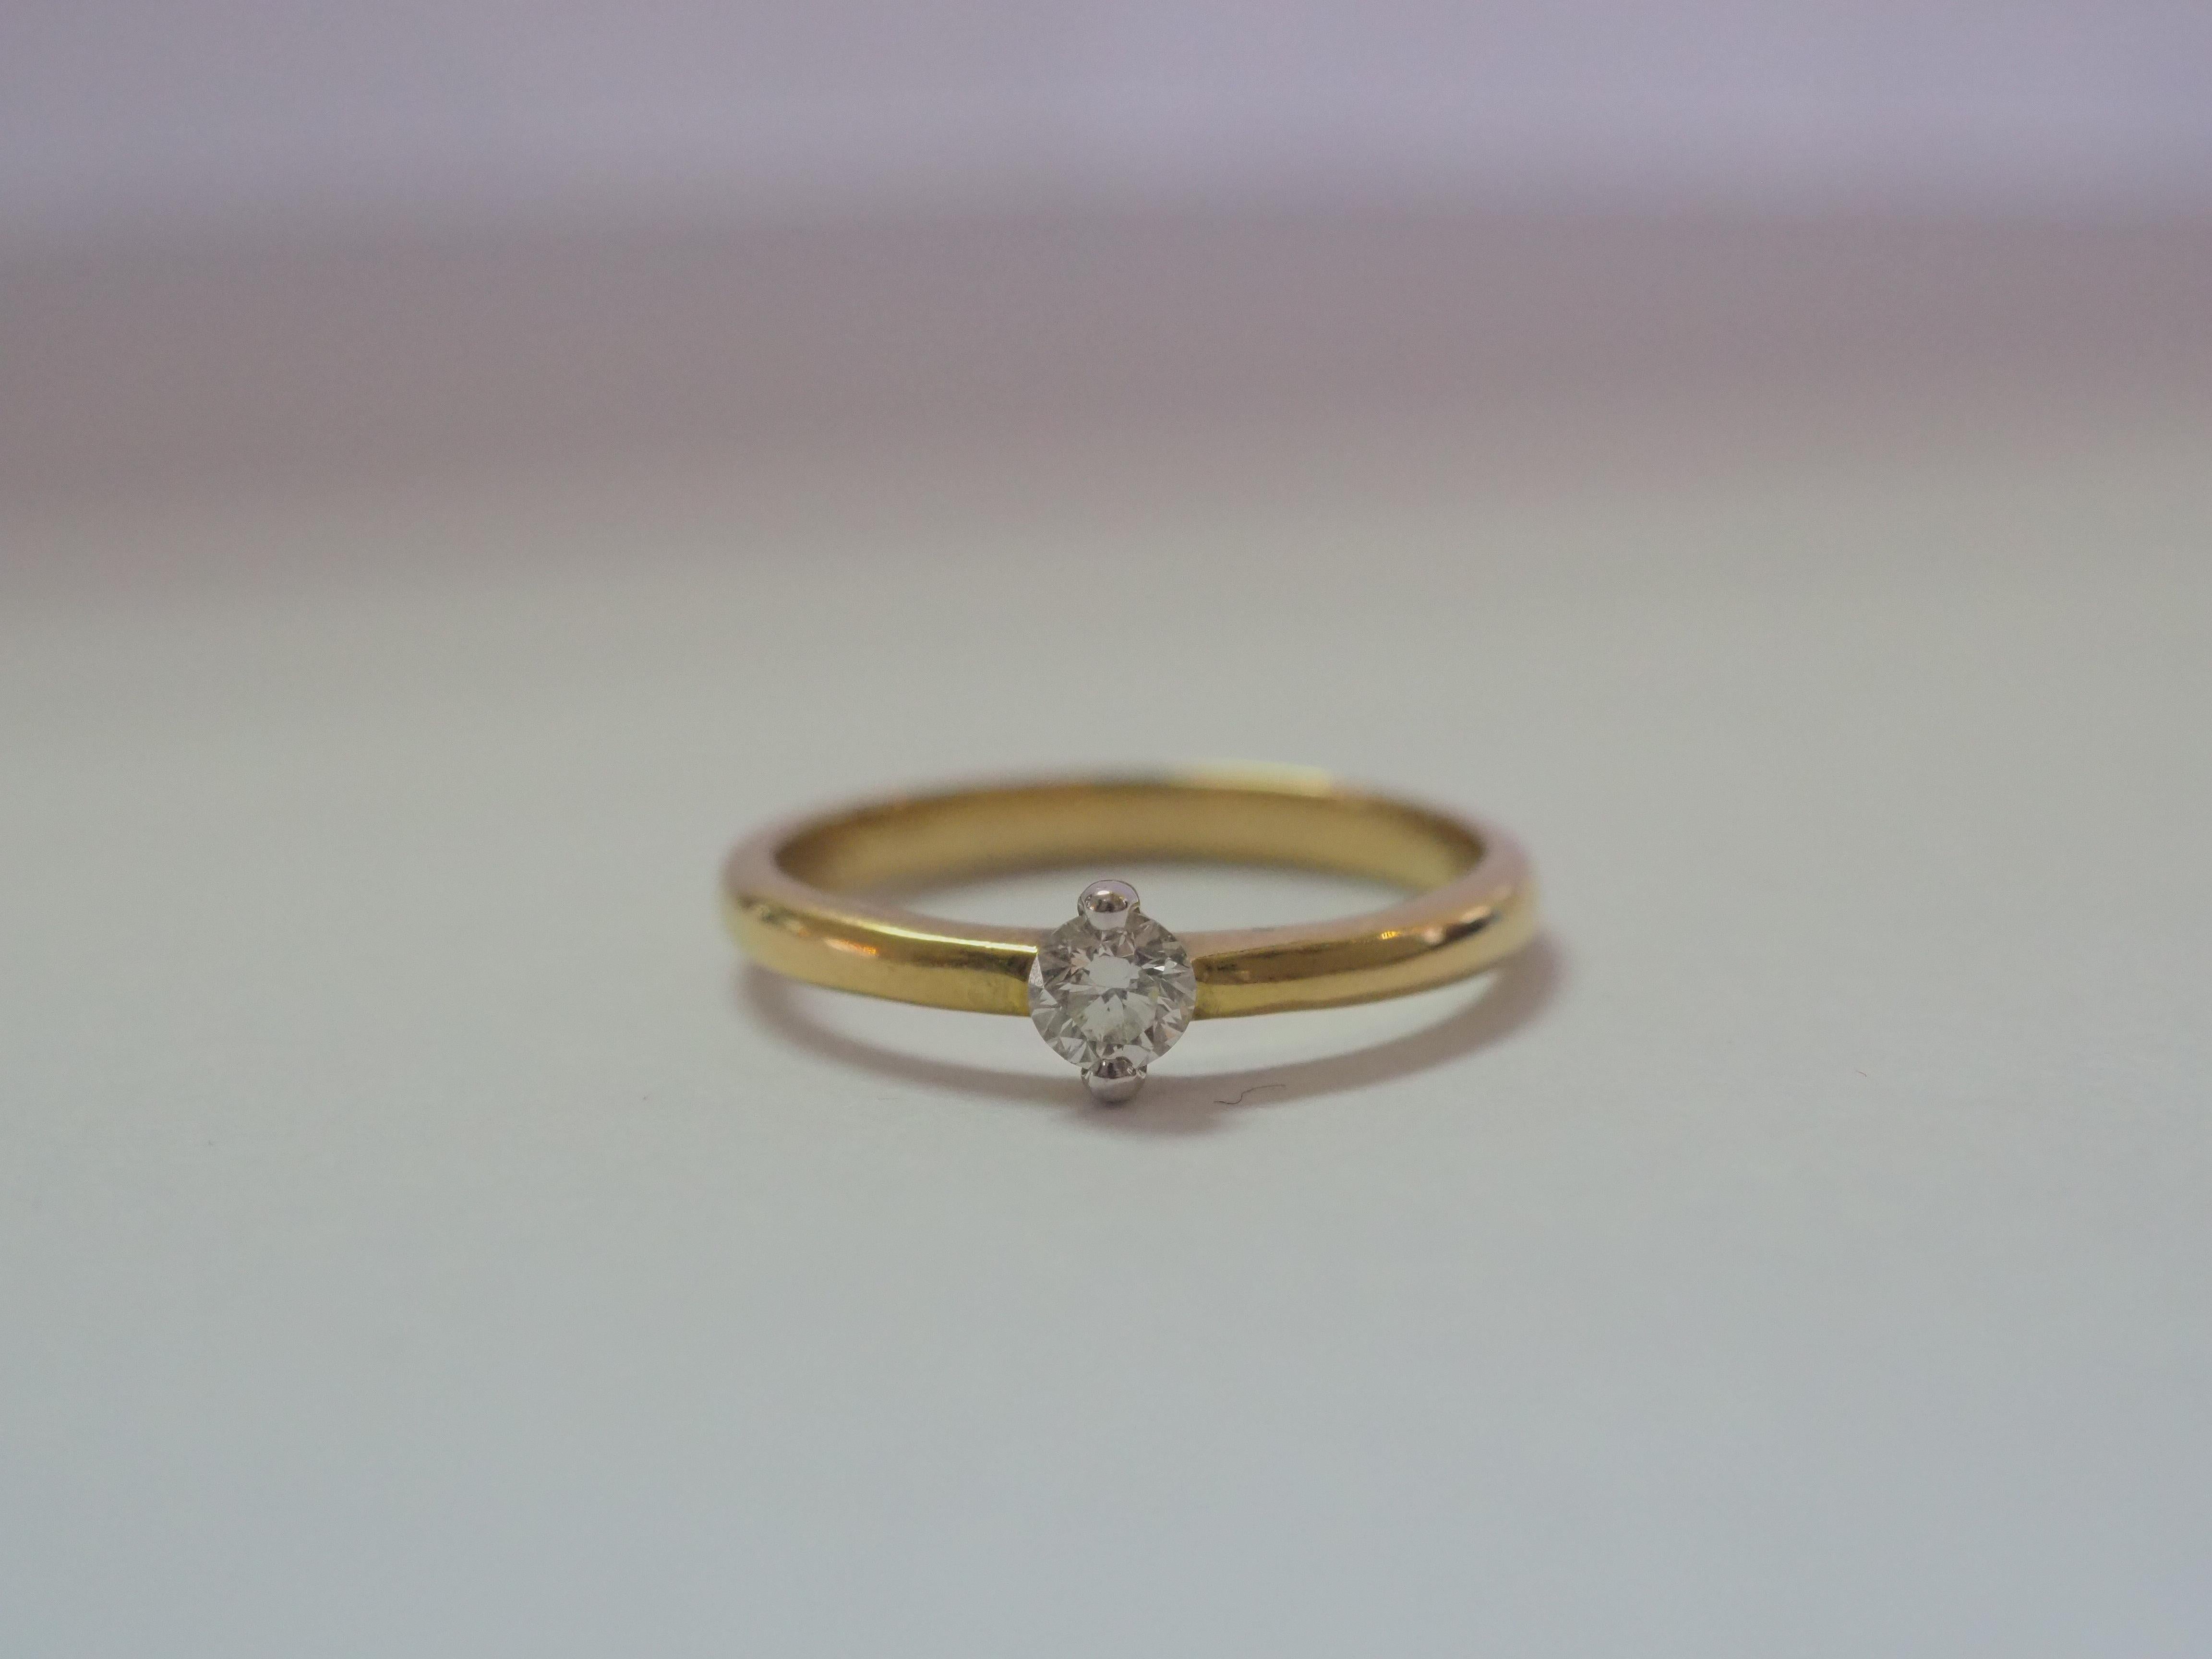 Dieser schöne Solitär Verlobungsring verfügt über eine sehr atemberaubende 0,20 Karat VS1-VS2 D Farbe Diamant als der Hauptstein! Der Ring sieht zierlich aus, aber der Schaft ist tatsächlich massiv. Die Qualitätsfassung mit zeitlosem Solitärdesign.